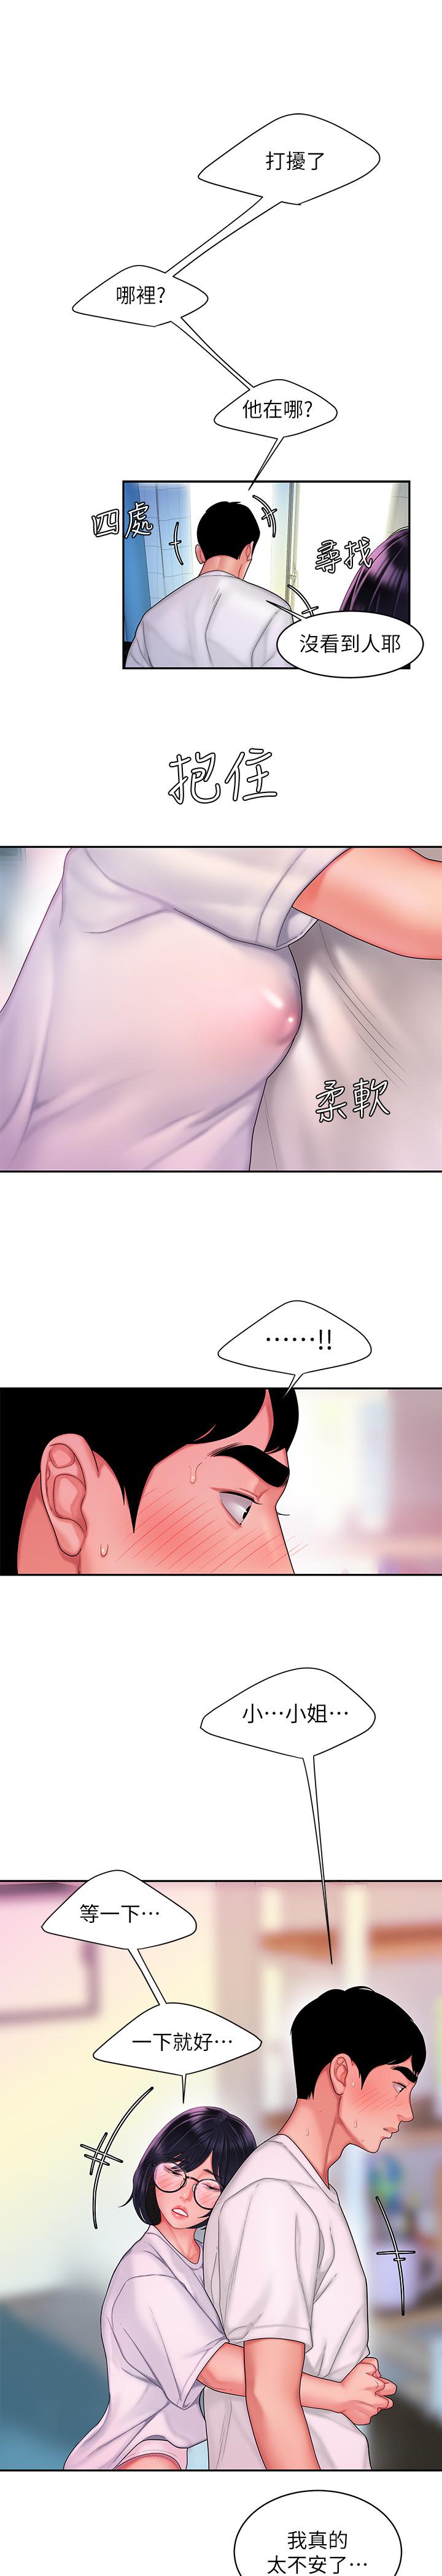 韩国污漫画 幸福外送員 第19话-让人变得愉悦的胸部 20